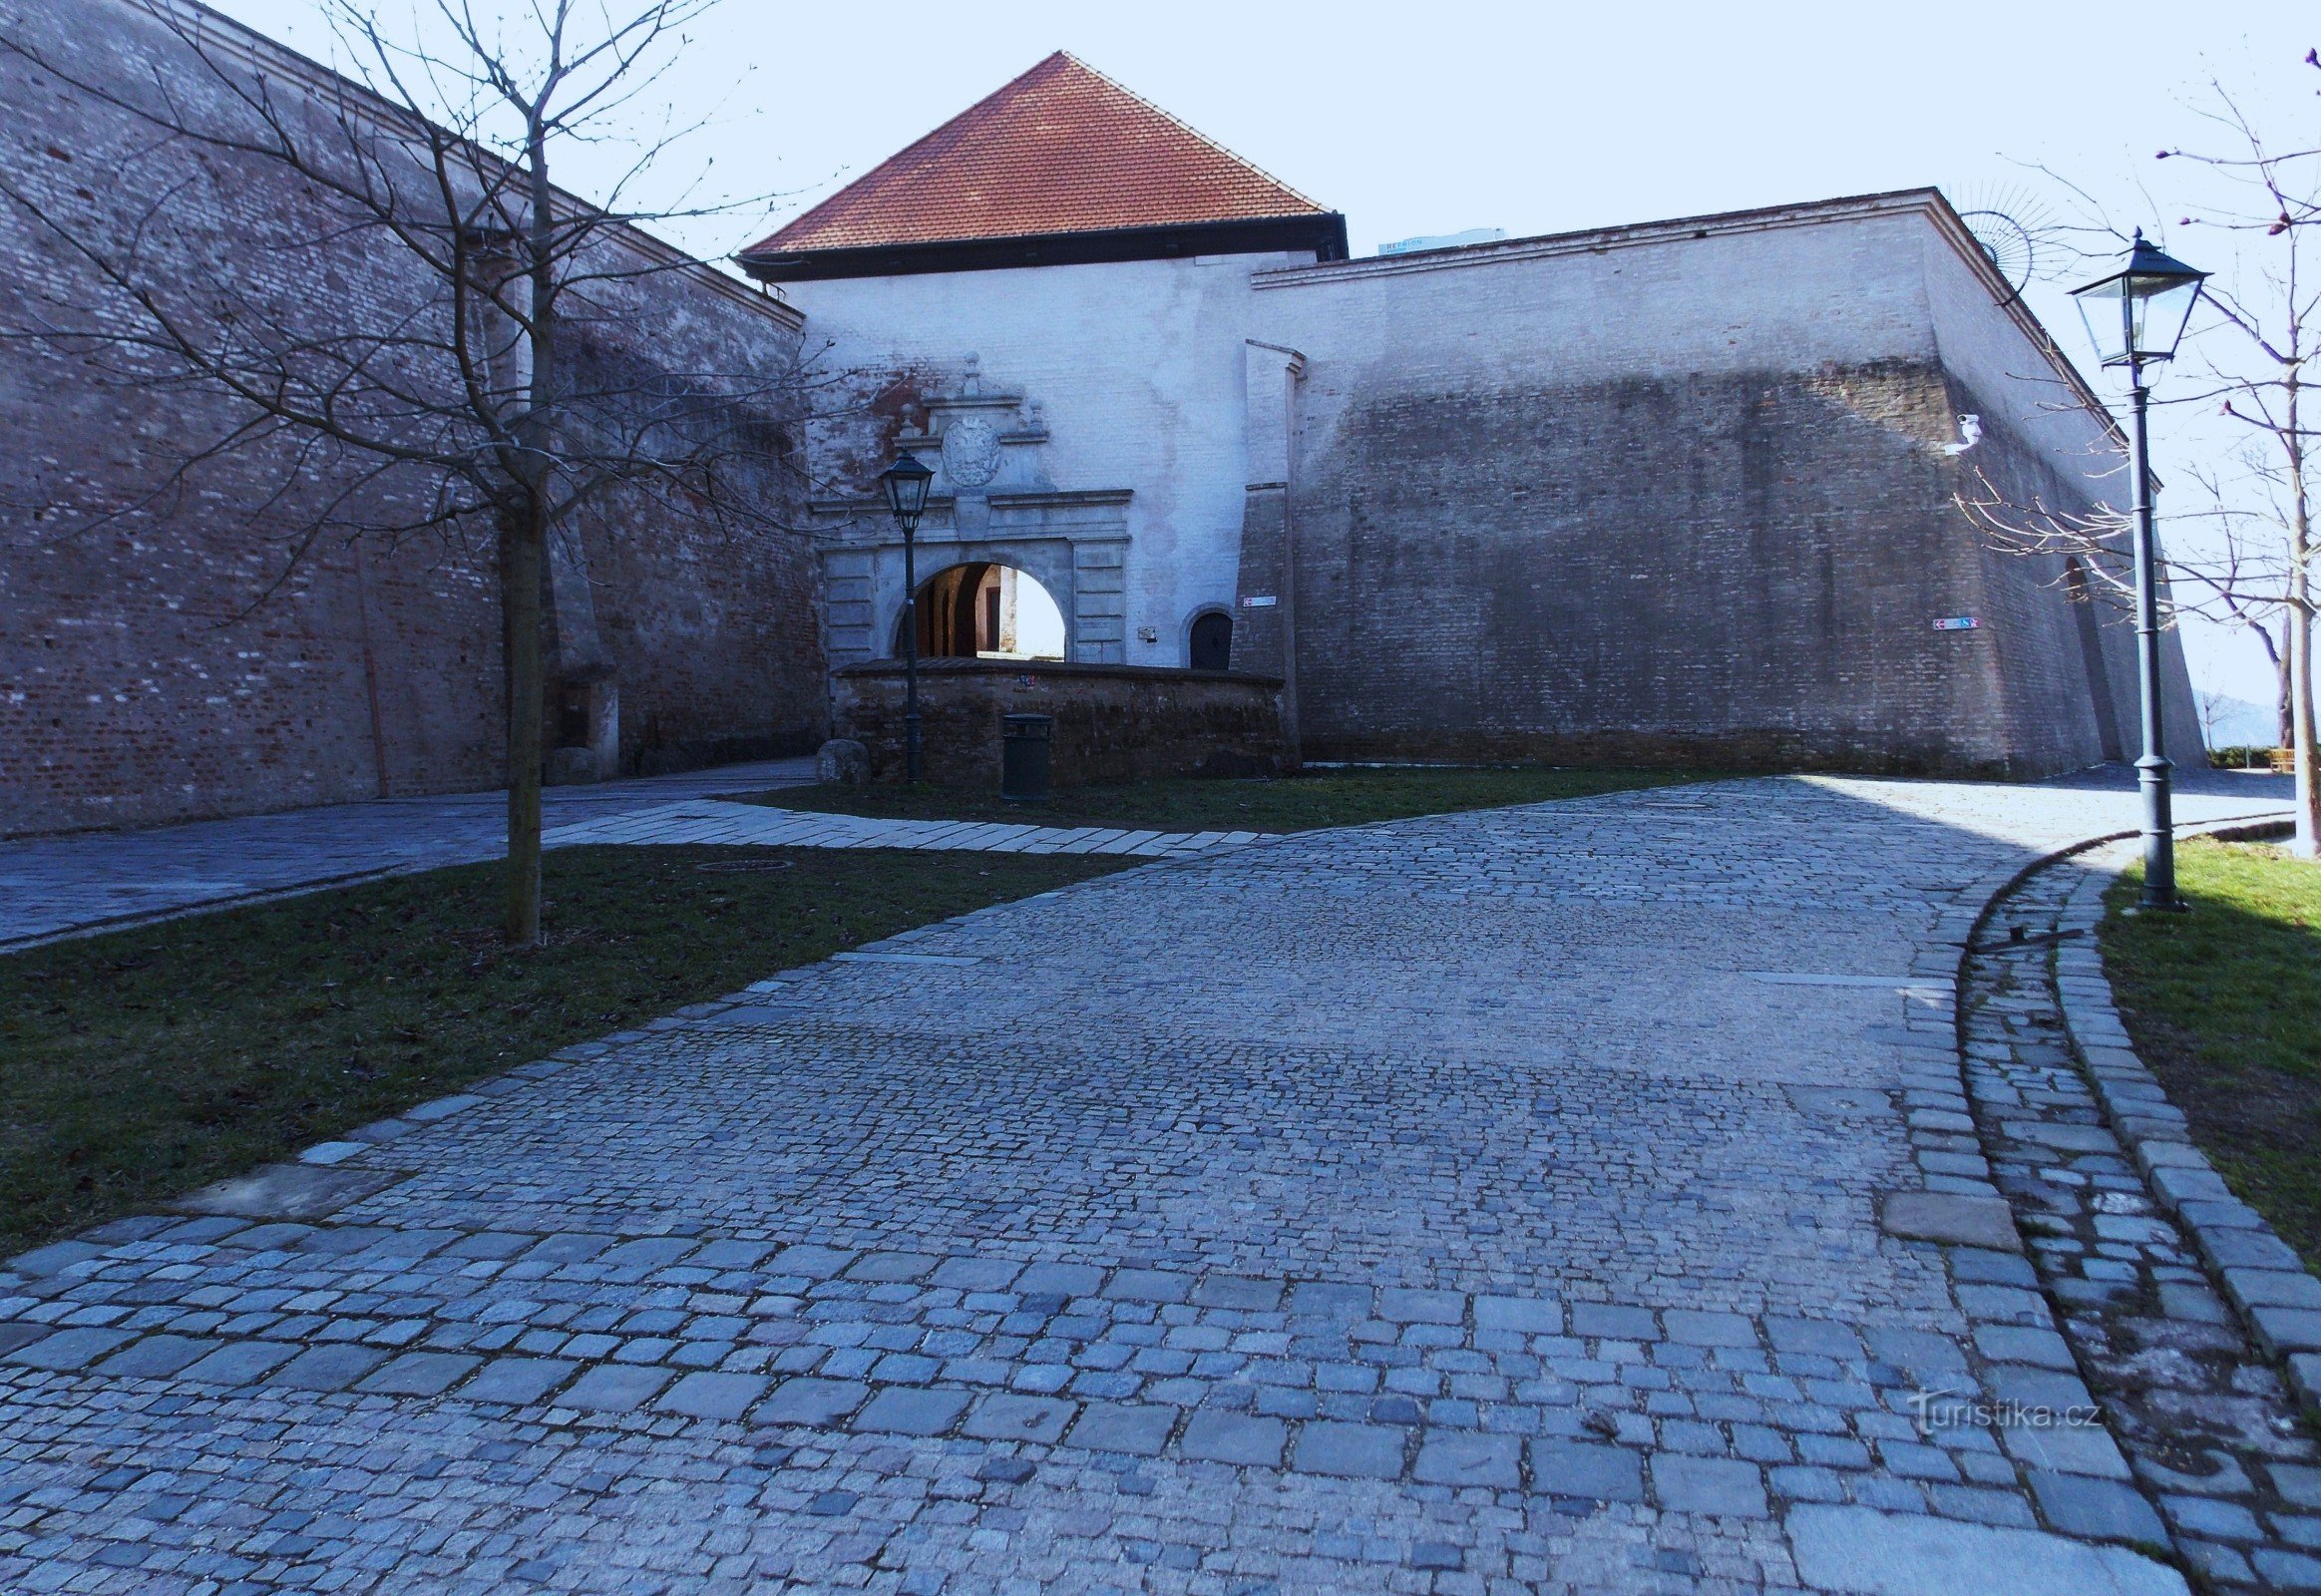 Gazebo at Špilberk Castle in Brno